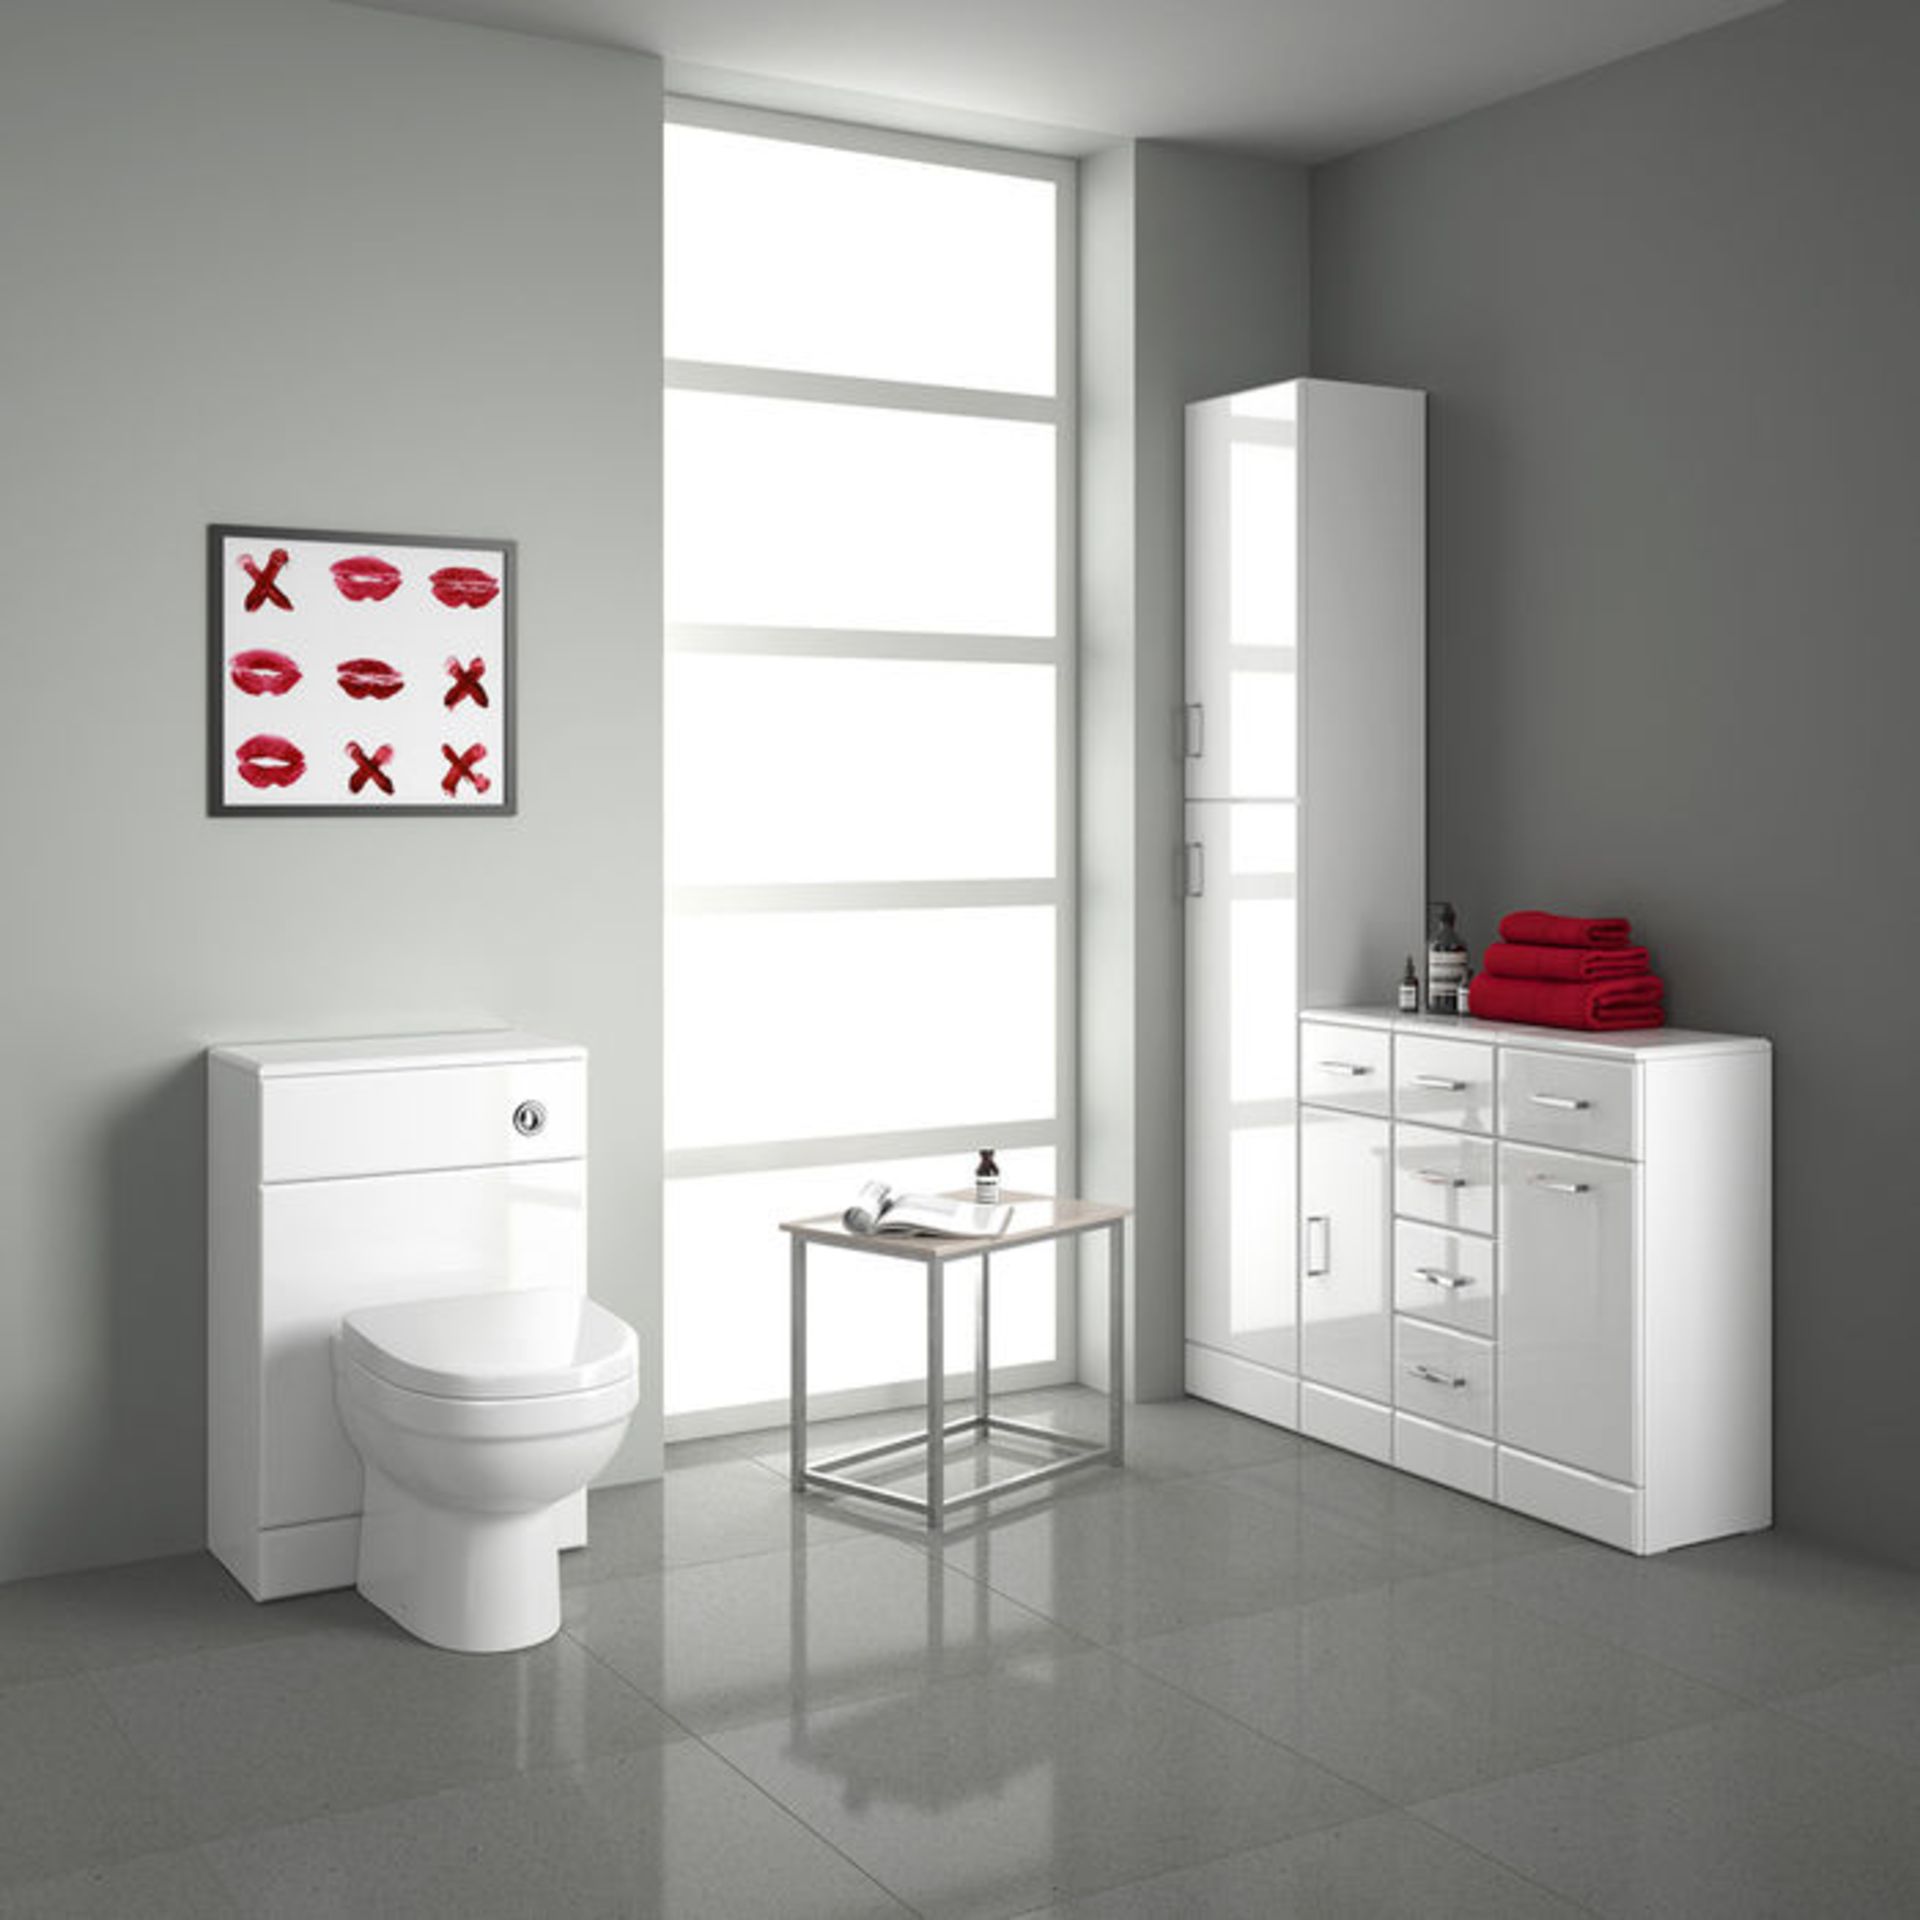 (GR59) 500x300mm Quartz Gloss White Back To Wall Toilet Unit RRP £143.99. Pristine gloss white - Image 4 of 6